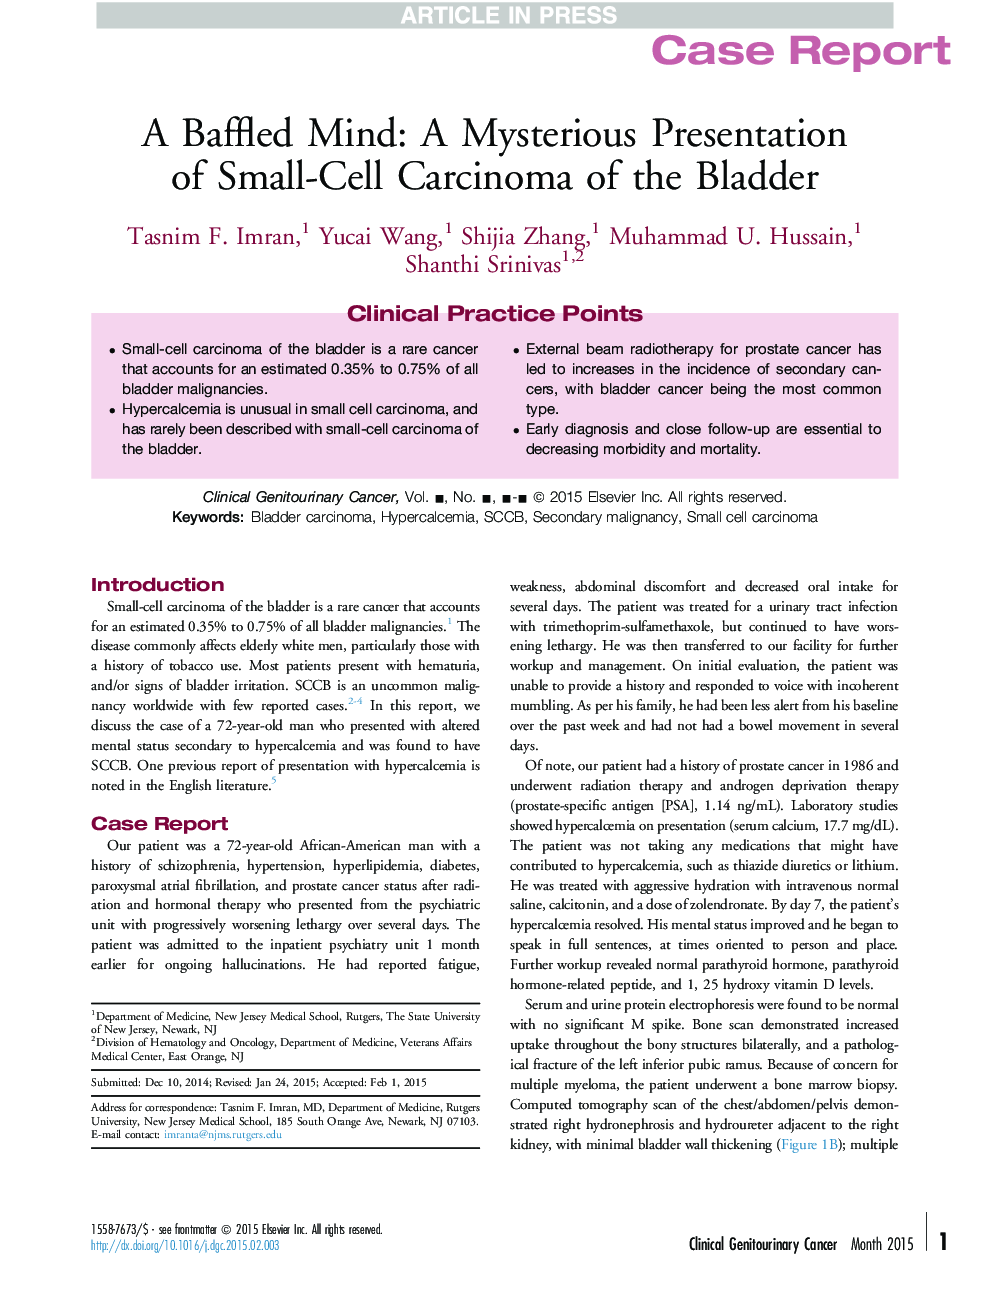 ذهن باطل: ارائه مرموز از سرطان سلول های کوچک مثانه 